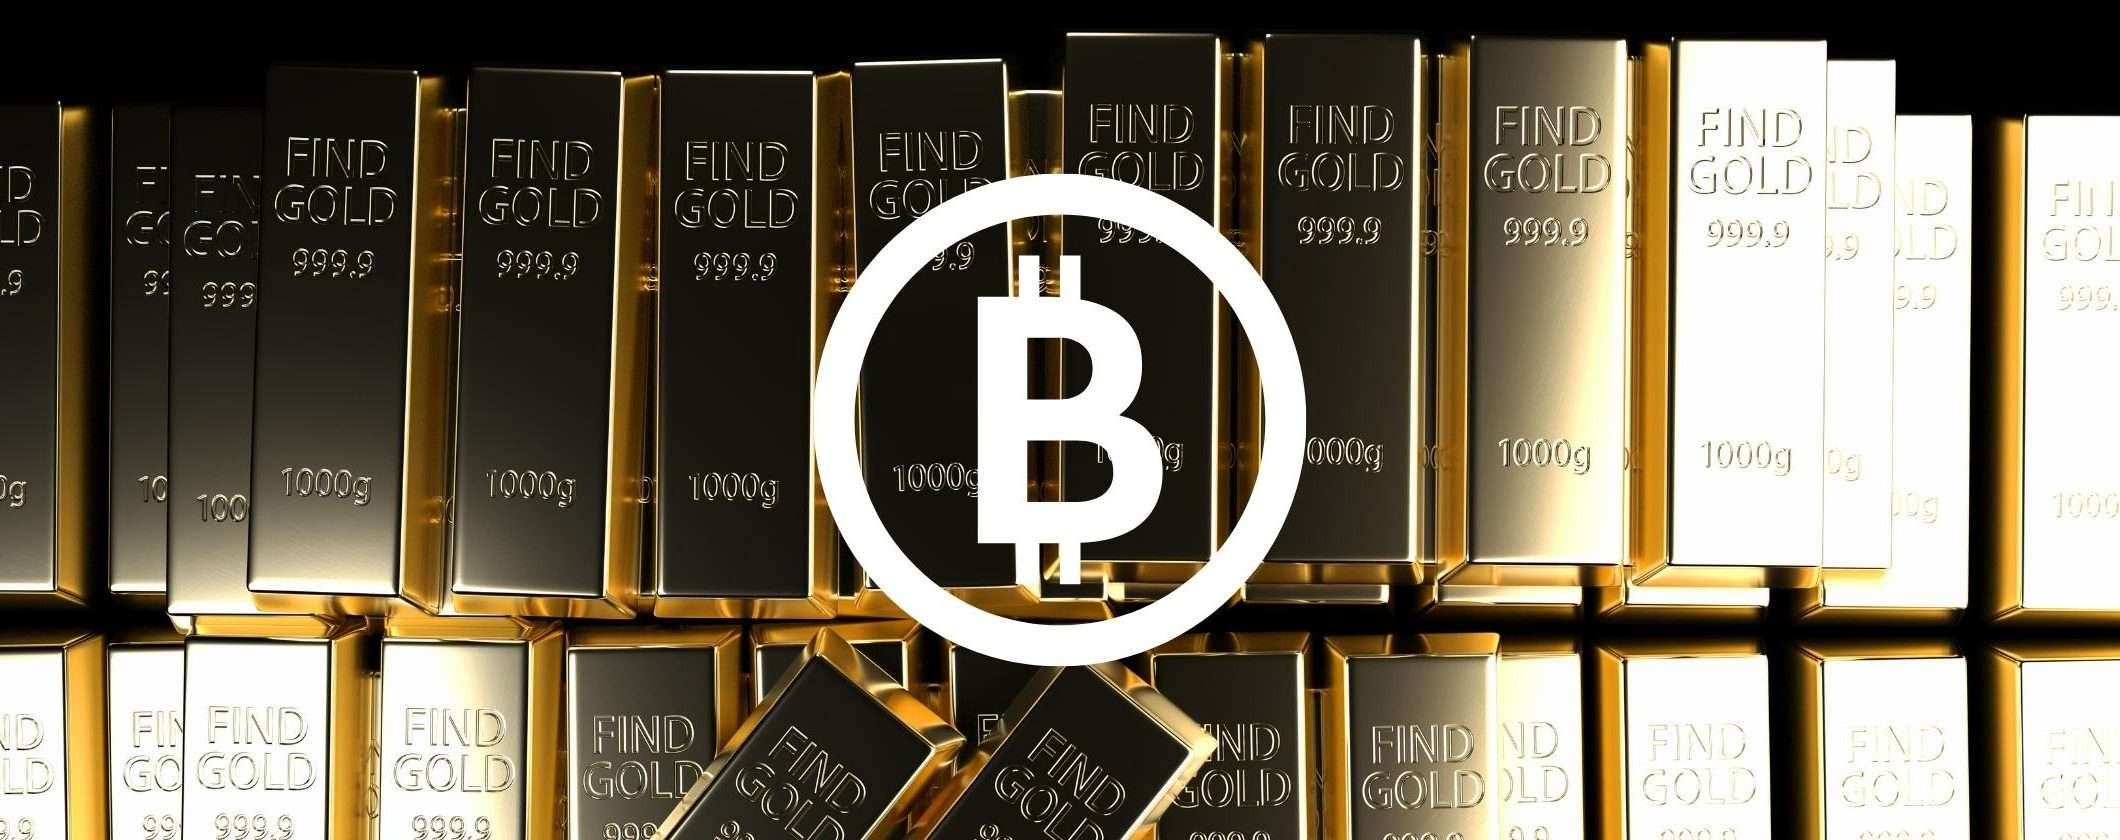 Perché MicroStrategy ha scelto Bitcoin e non l'oro